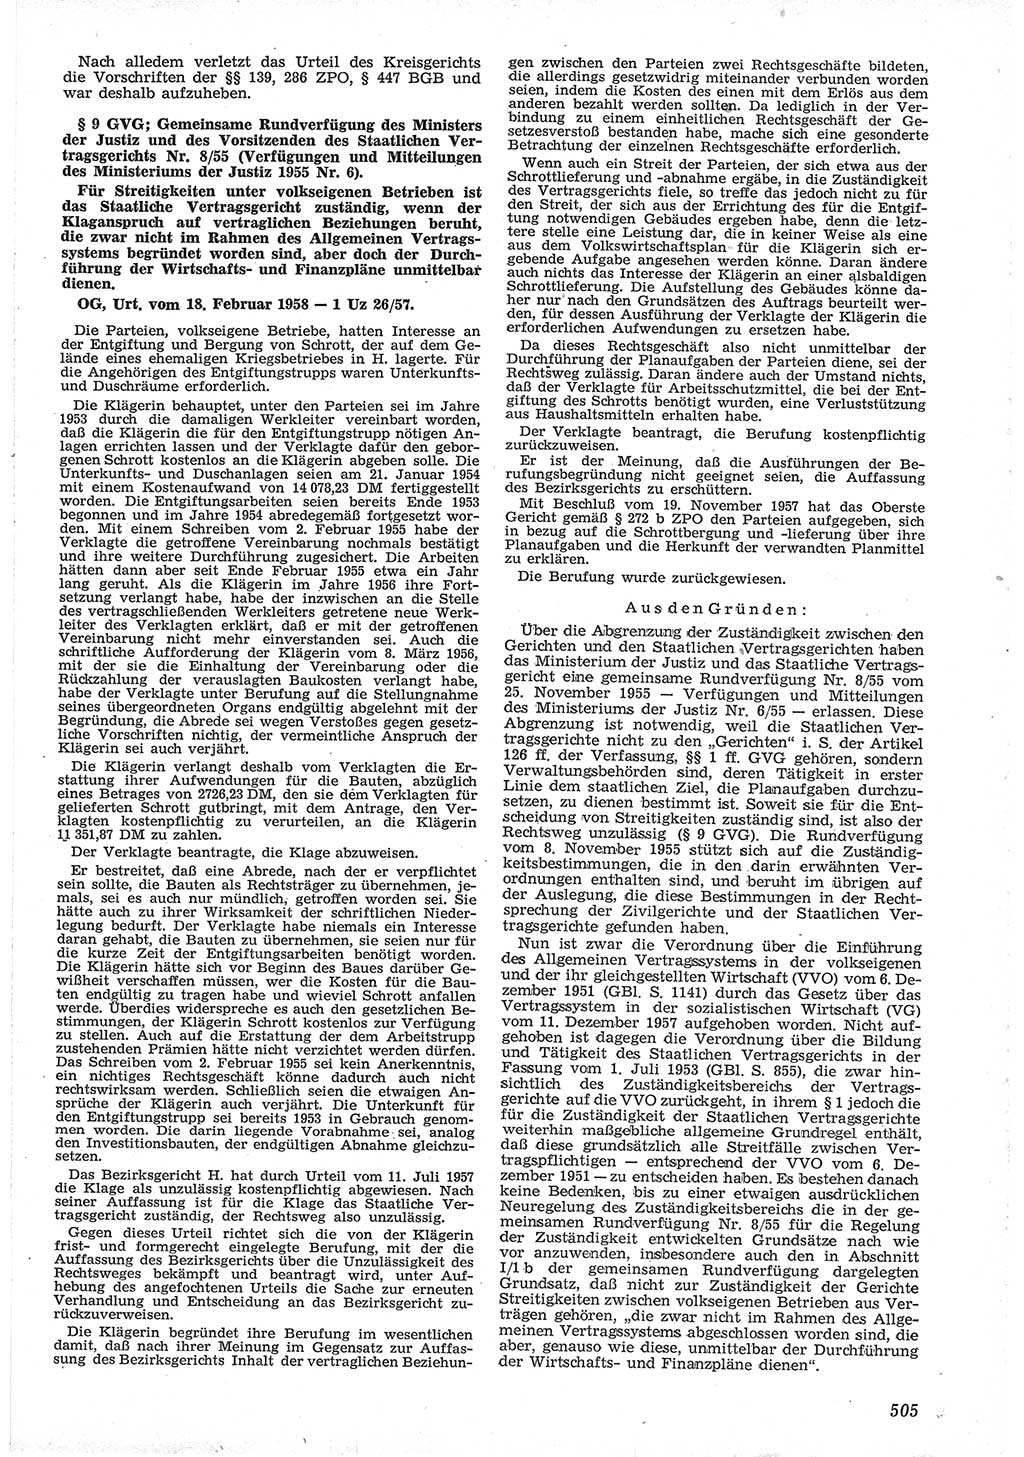 Neue Justiz (NJ), Zeitschrift für Recht und Rechtswissenschaft [Deutsche Demokratische Republik (DDR)], 12. Jahrgang 1958, Seite 505 (NJ DDR 1958, S. 505)